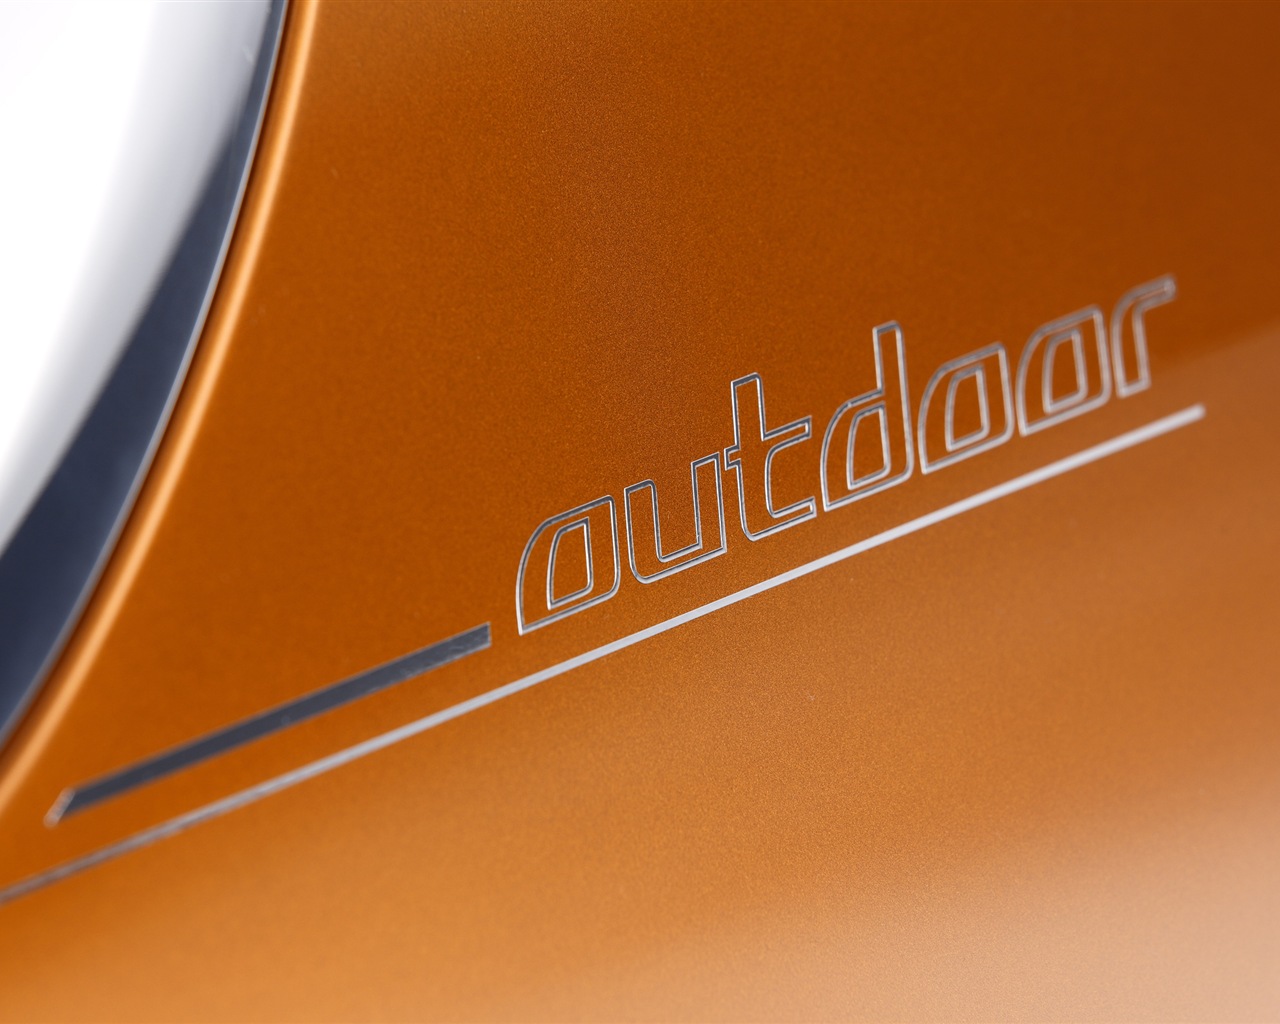 2013 BMW Concept Active Tourer 宝马旅行车 高清壁纸17 - 1280x1024